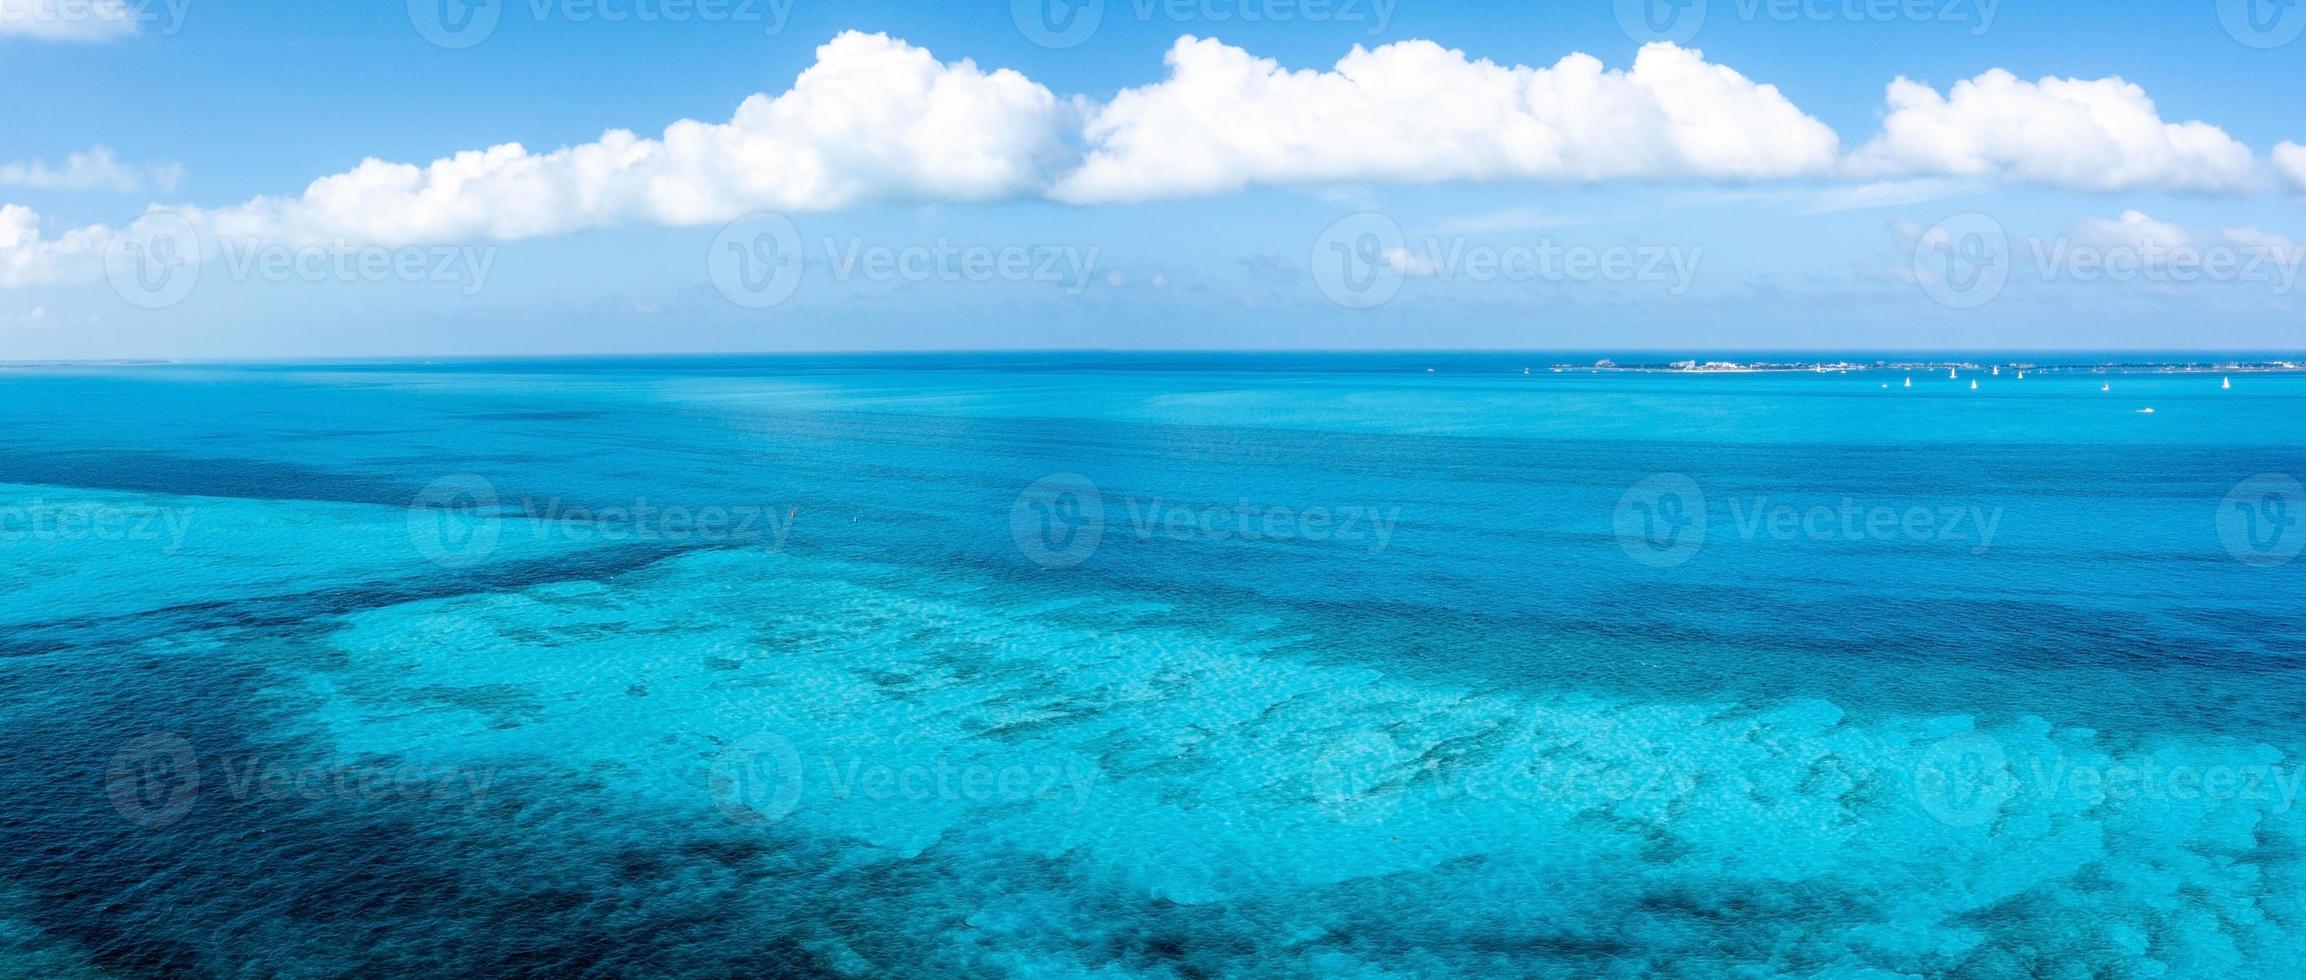 vista aérea da água azul turquesa perto, cancun foto